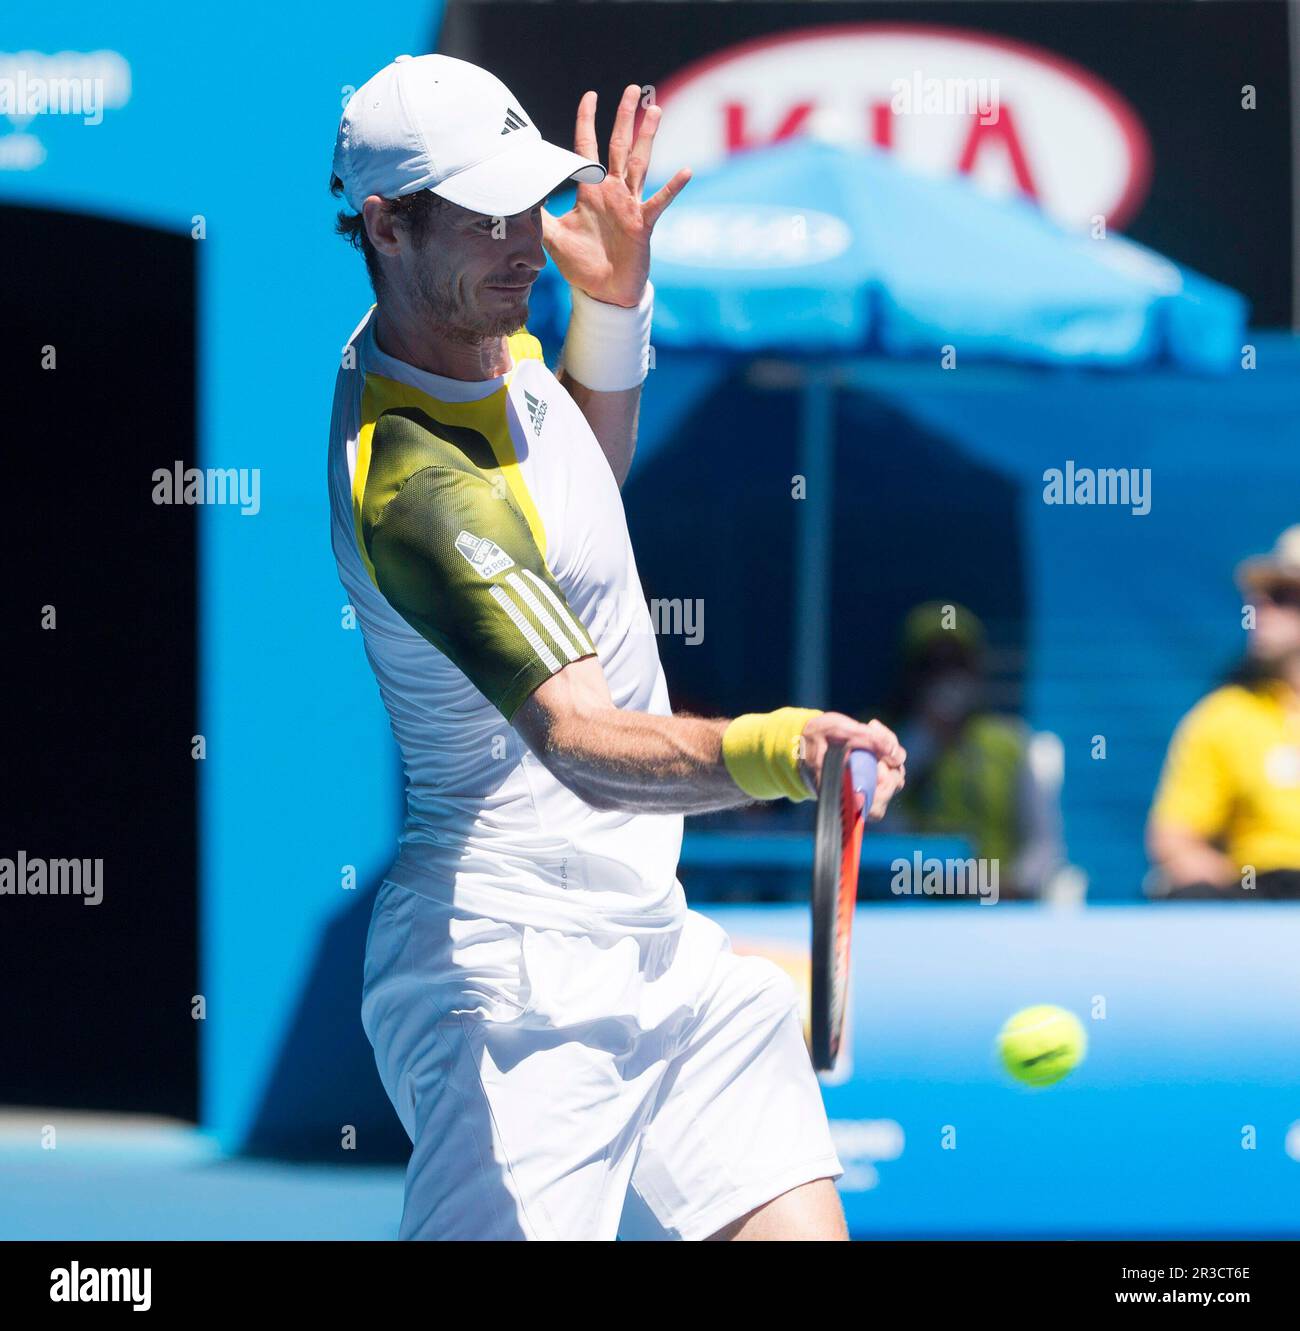 Andy Murray remporte le premier match tennis - Open d'Australie - Grand Chelem - Melbourne Park 2013 - Melbourne - Australie - mardi 15th janvier 2013. Banque D'Images